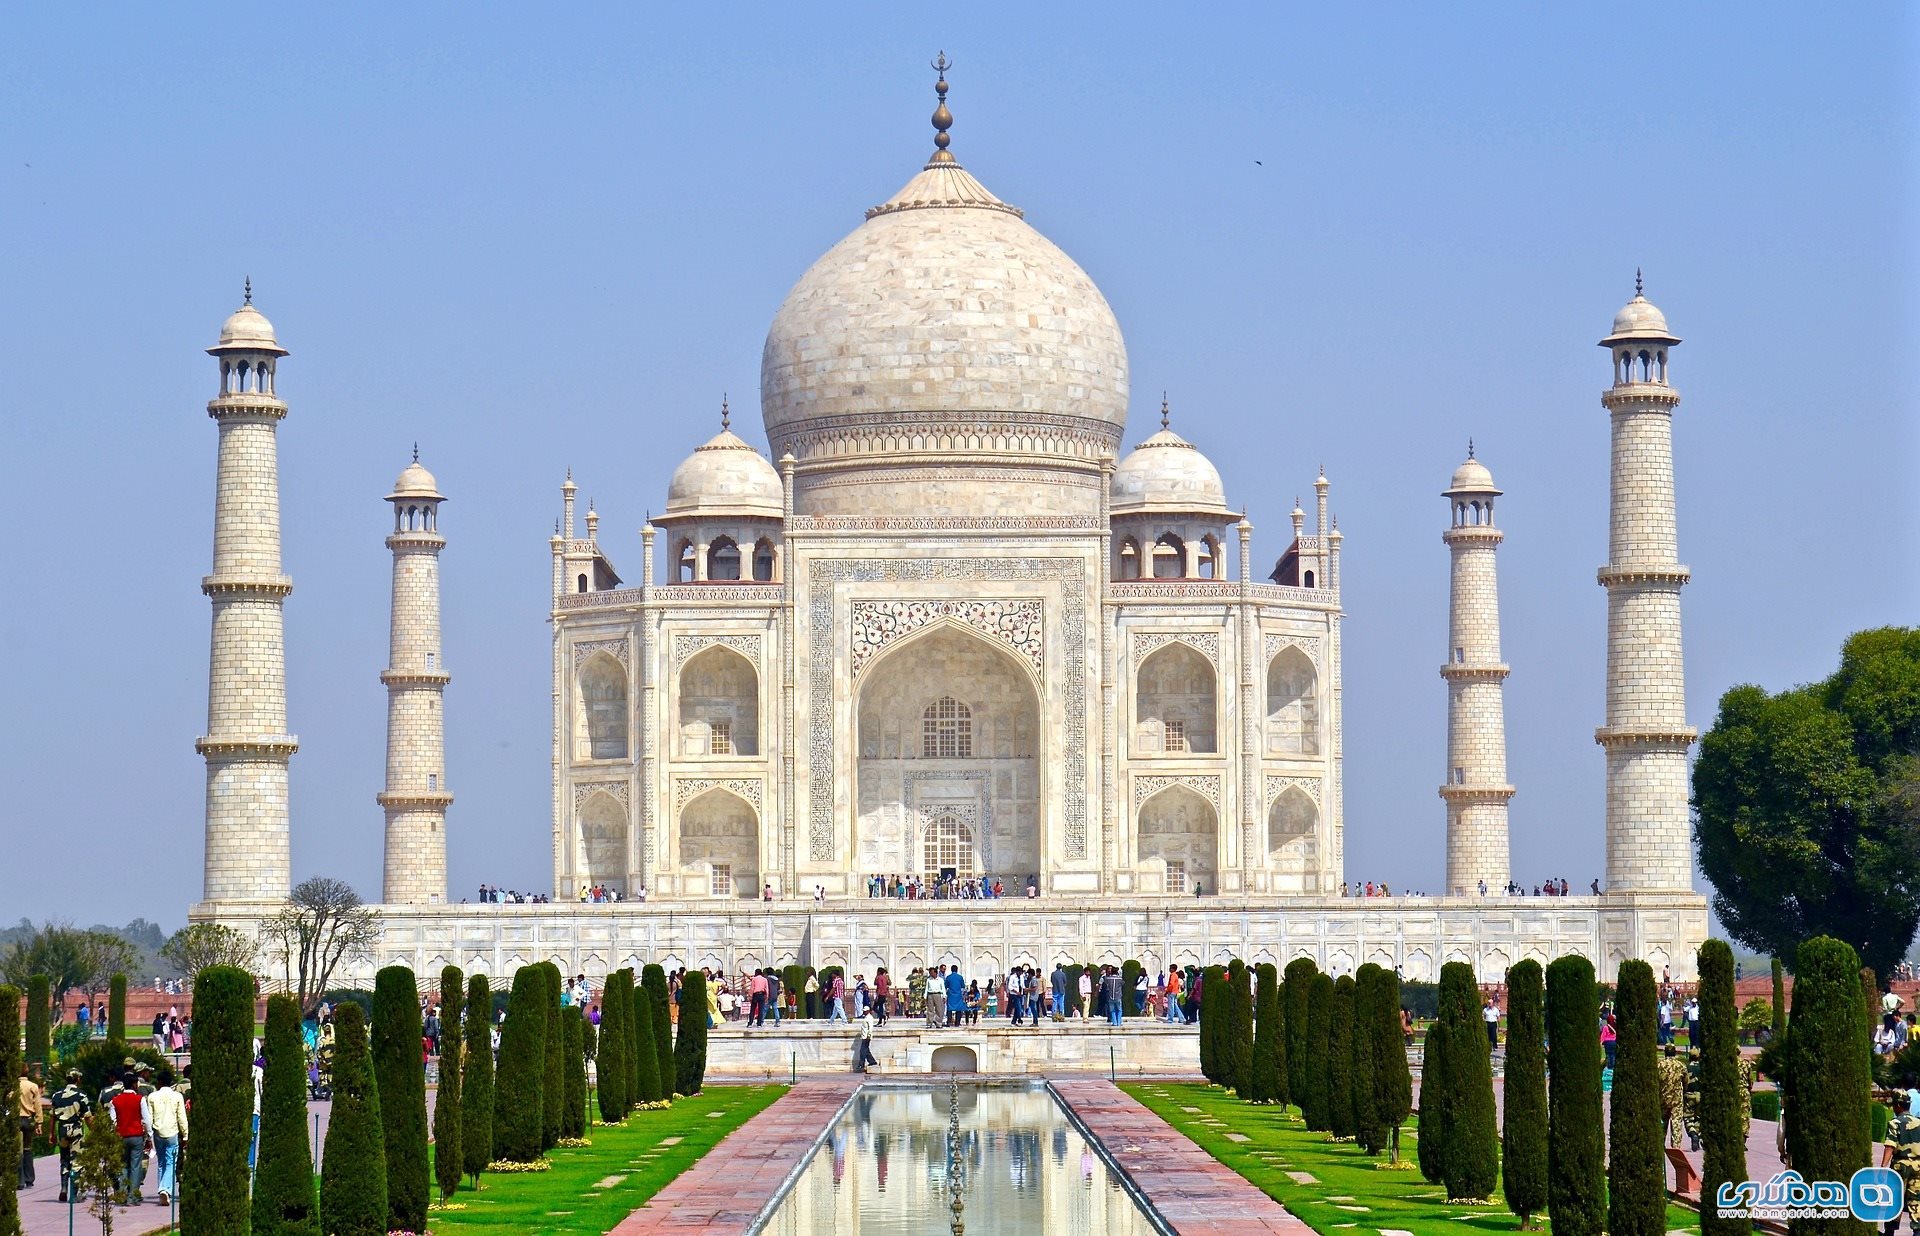 تاج محل در آگرا The Taj Mahal, Agra